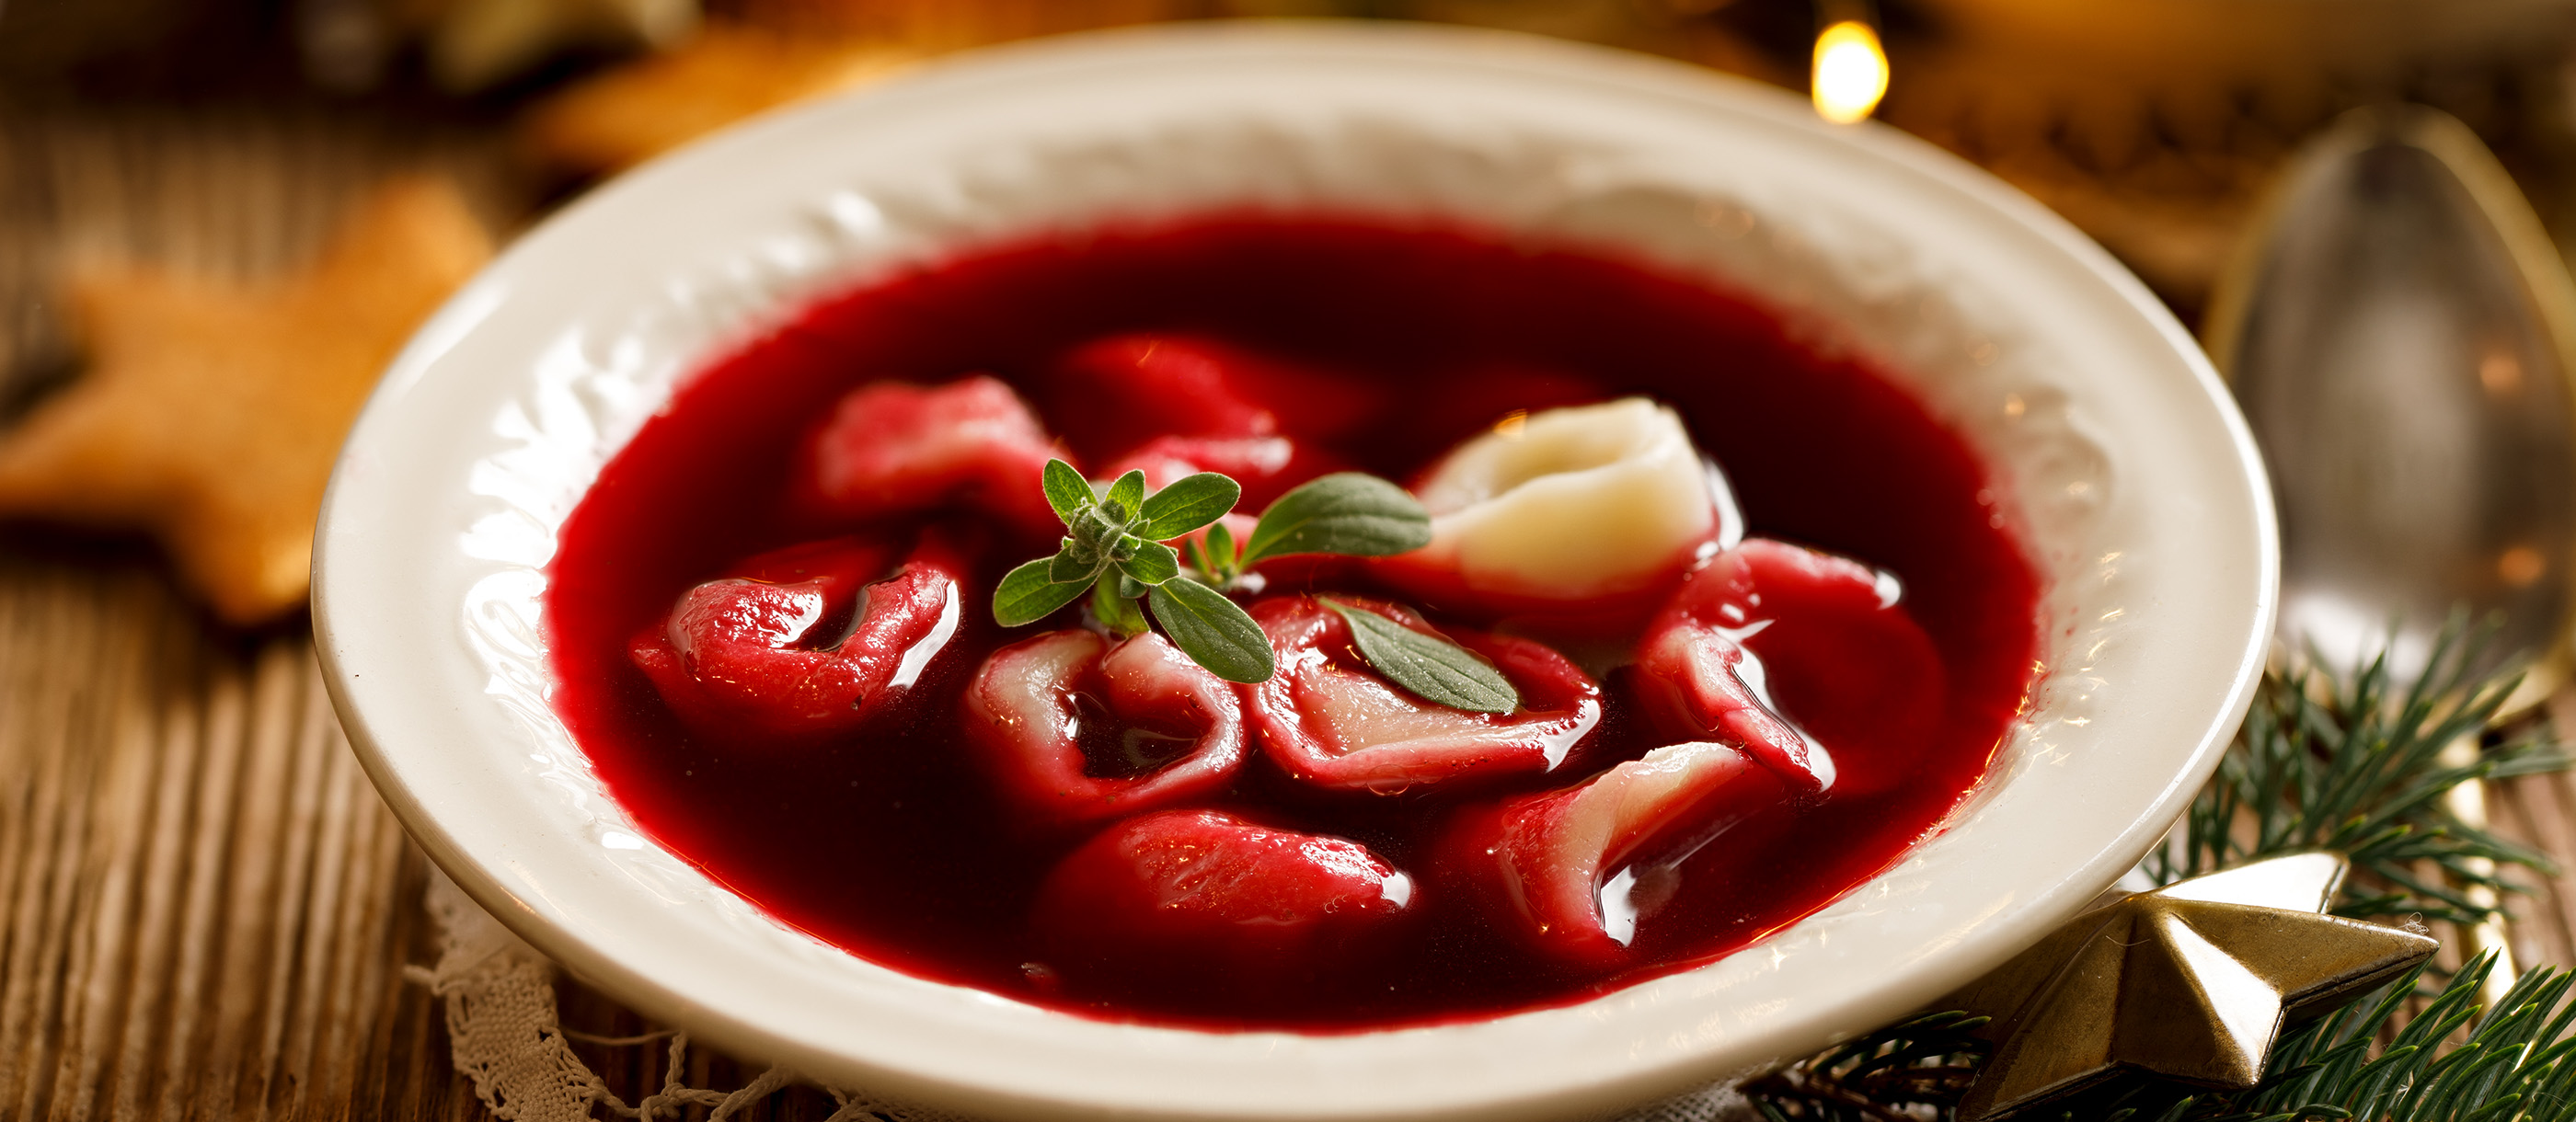 Barszcz Czysty Czerwony | Traditional Vegetable Soup From Poland